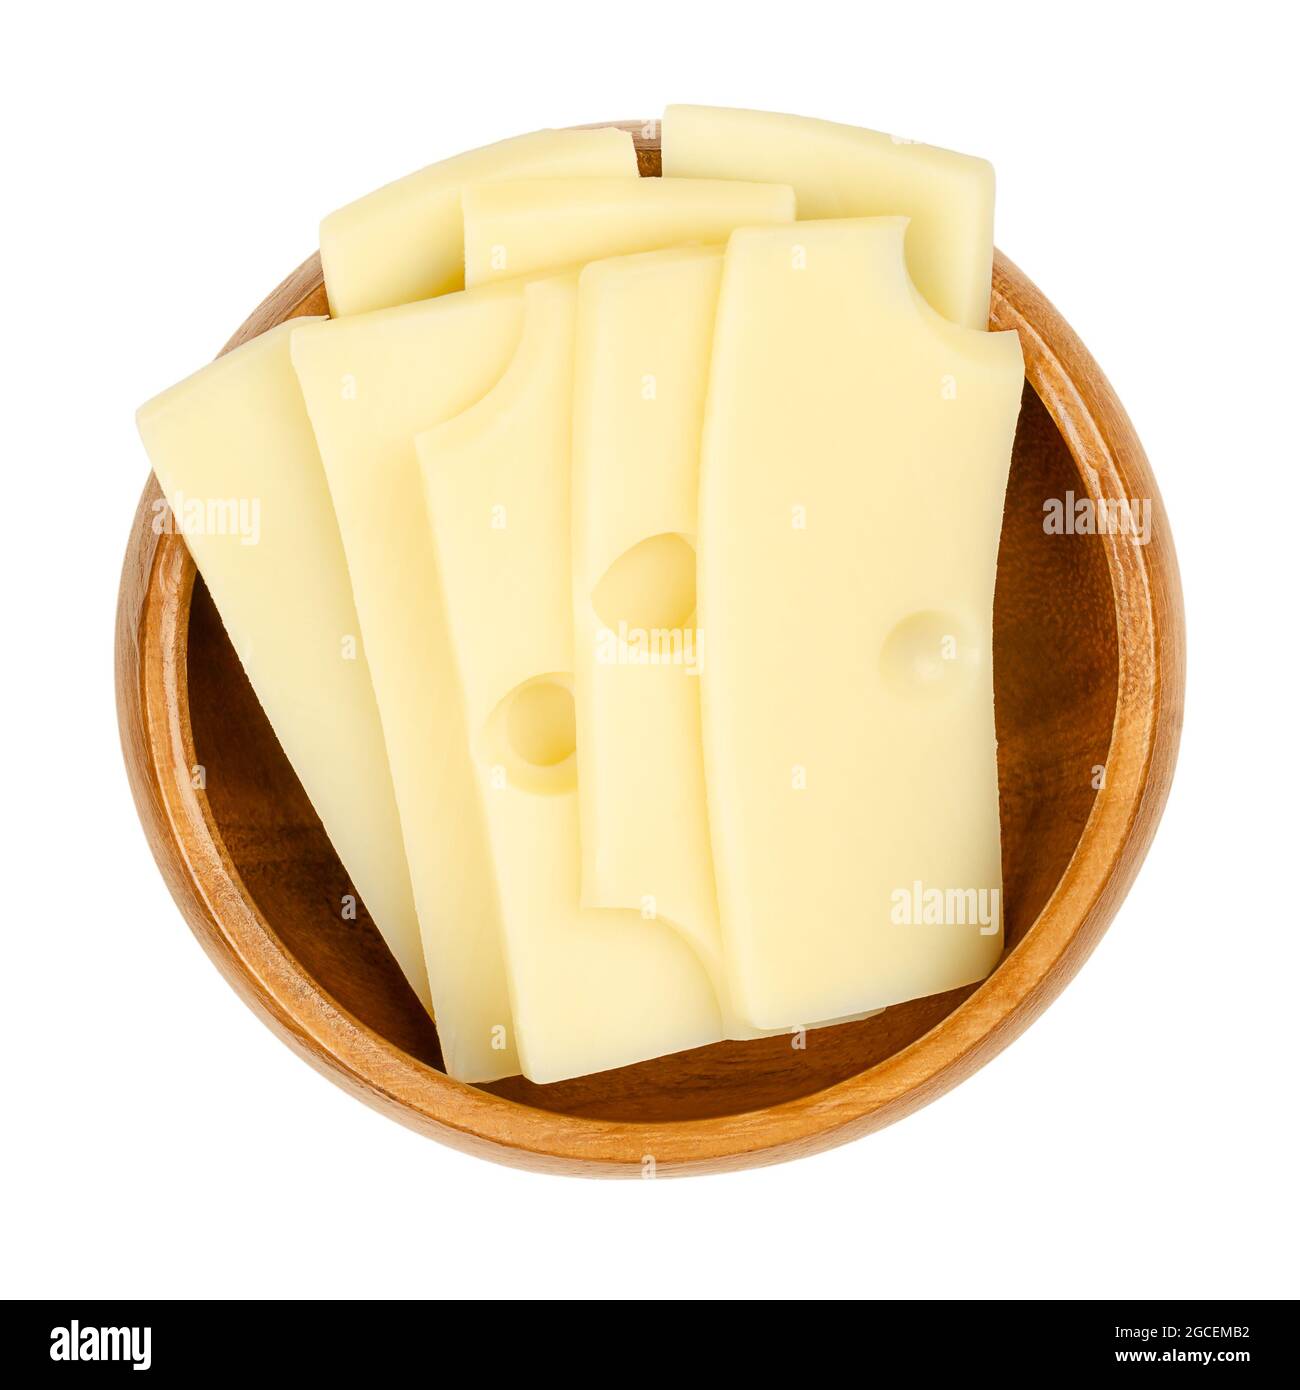 Affettato il formaggio Emmental, in una ciotola di legno. Fette di Emmenthal o Emmental, un formaggio svizzero giallo con buchi, medio-duro. Foto Stock